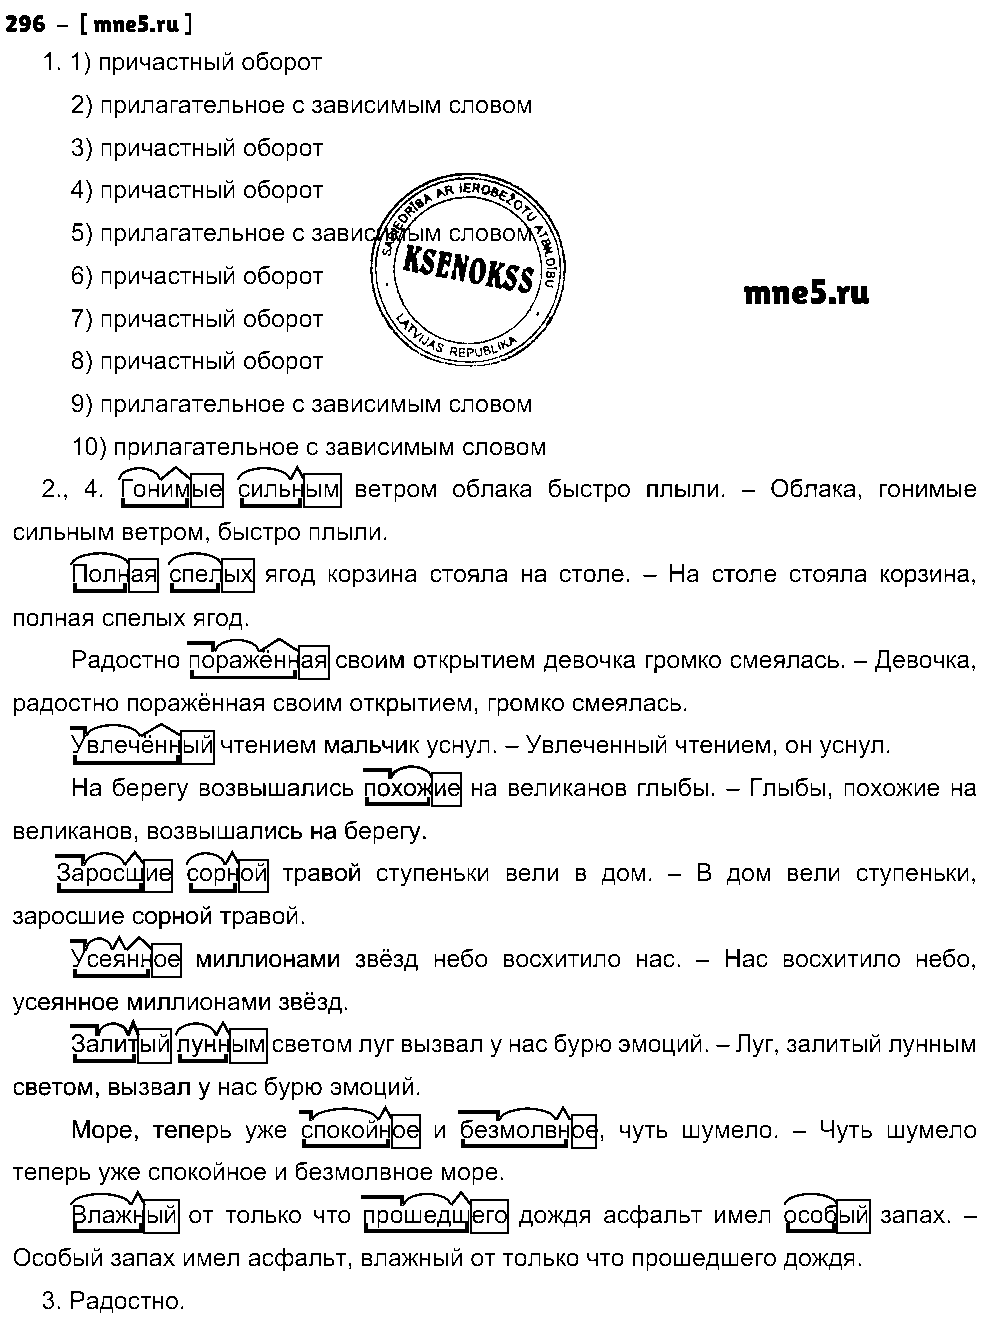 ГДЗ Русский язык 8 класс - 296